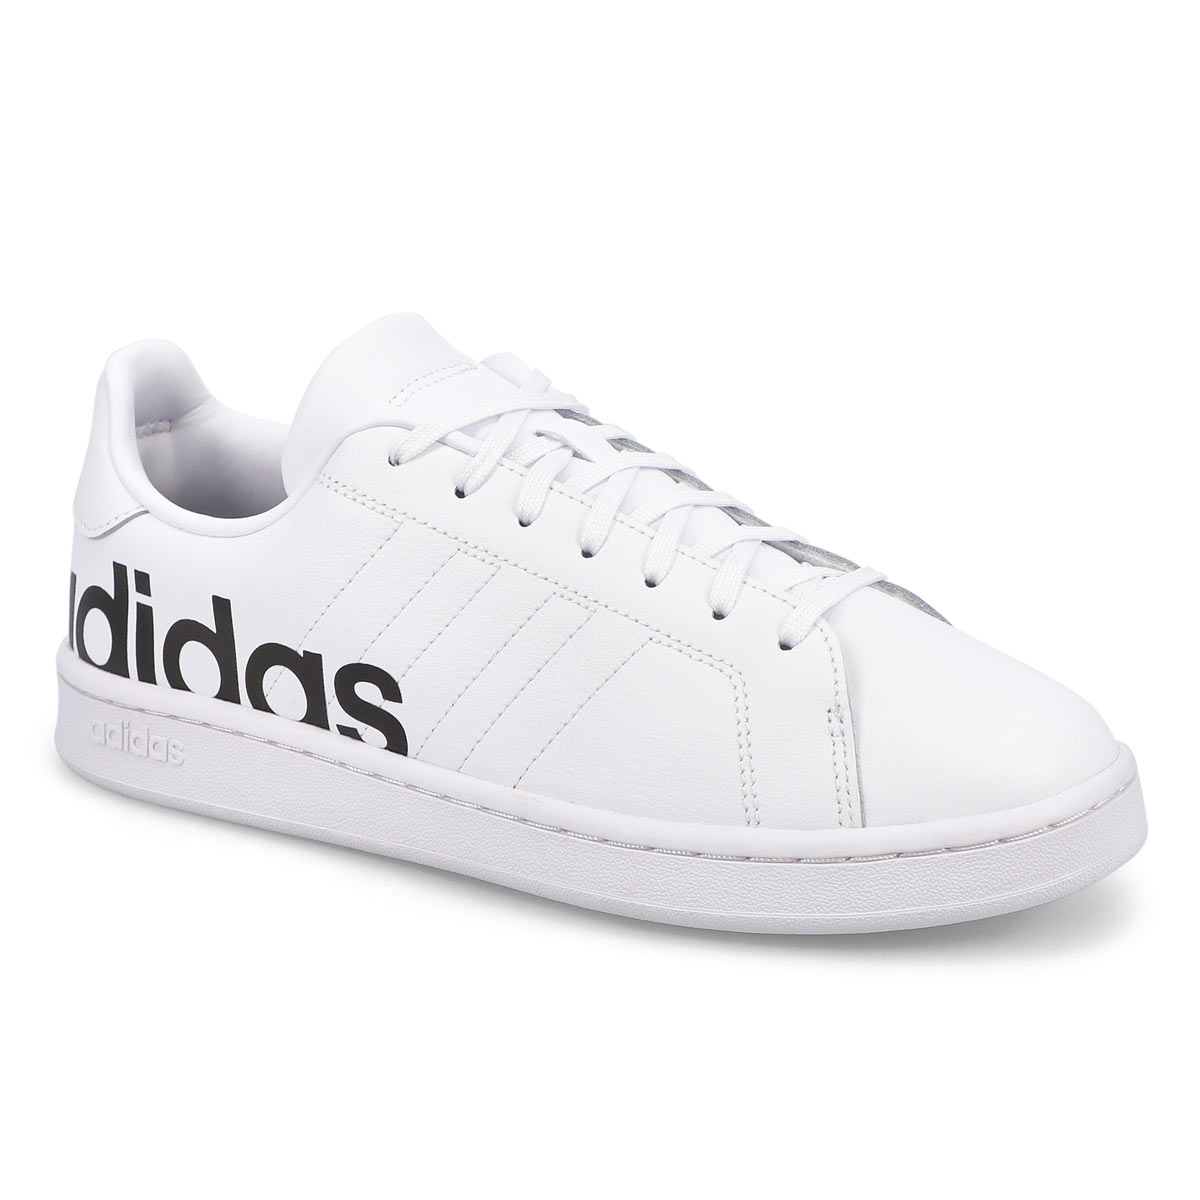 adidas Men's Grand Court Sneaker - White/Blac | SoftMoc.com